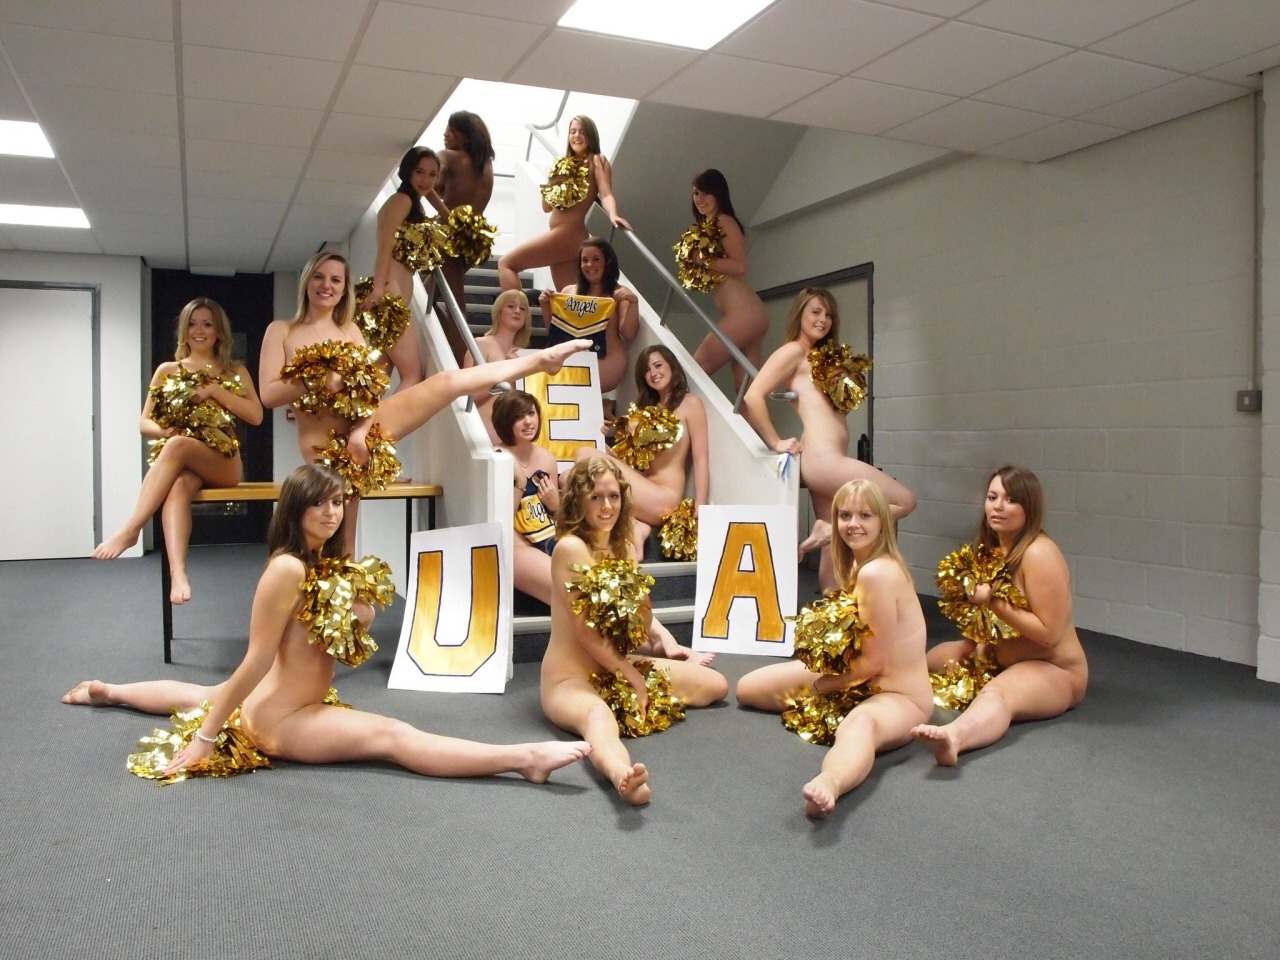 Naked nfl cheerleaders having sex